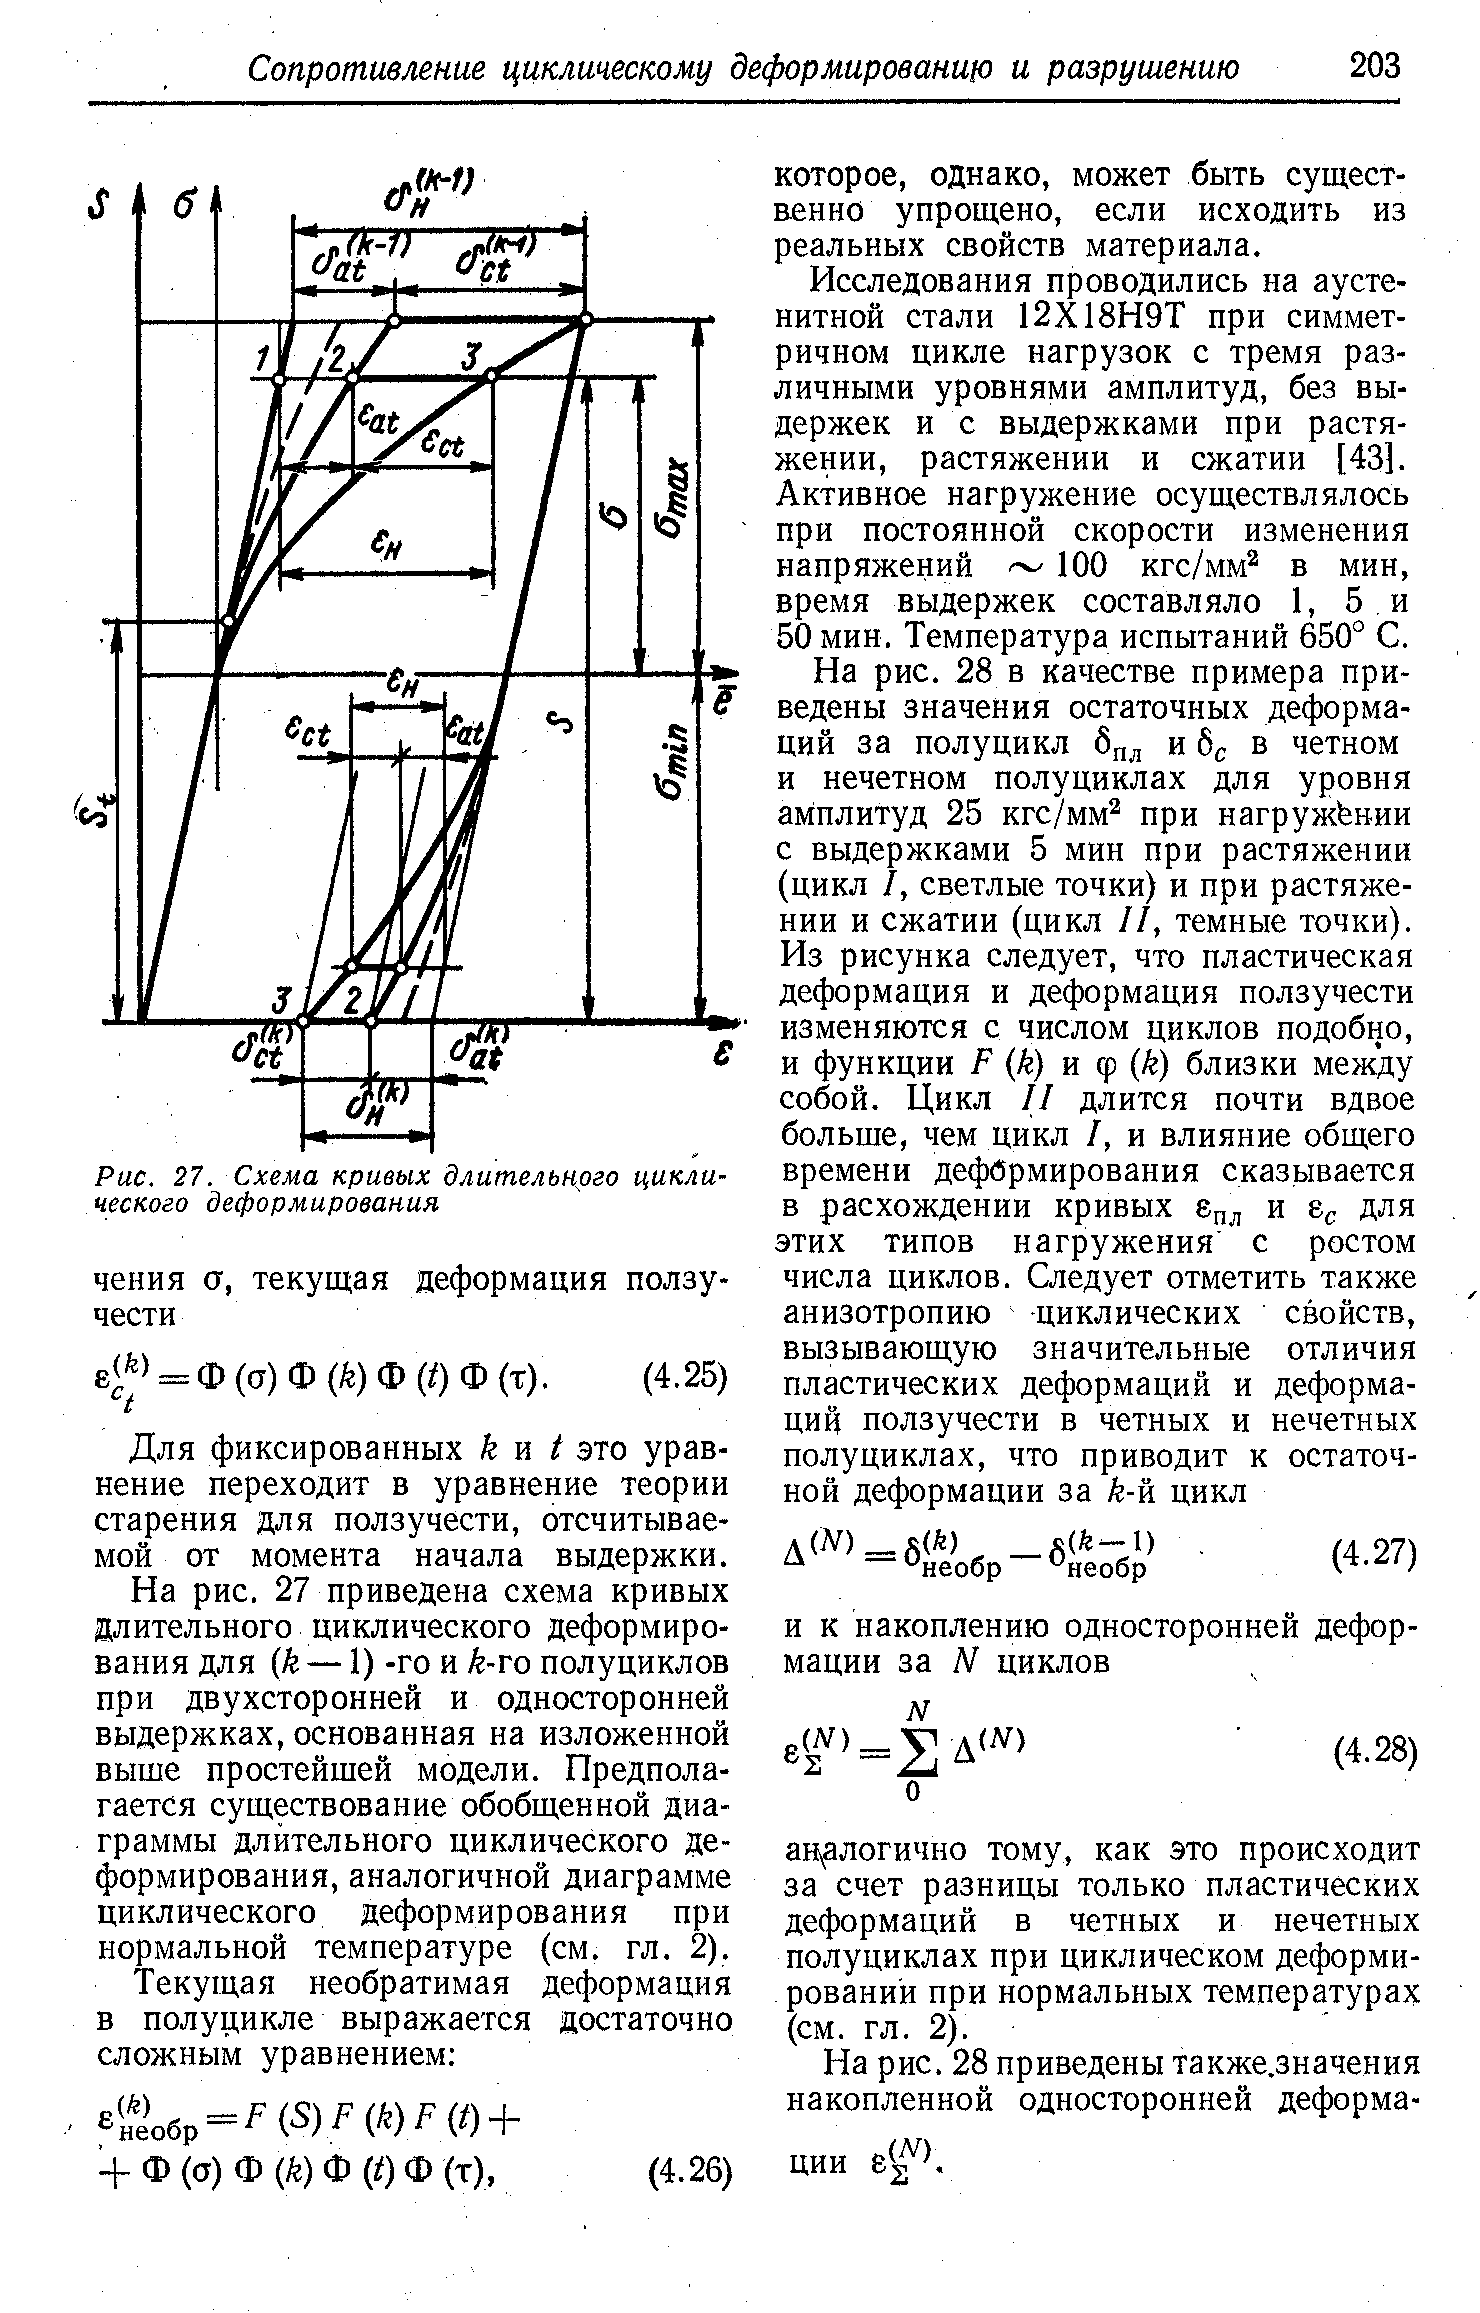 Рис. 27. Схема кривых длительного циклического деформирования
